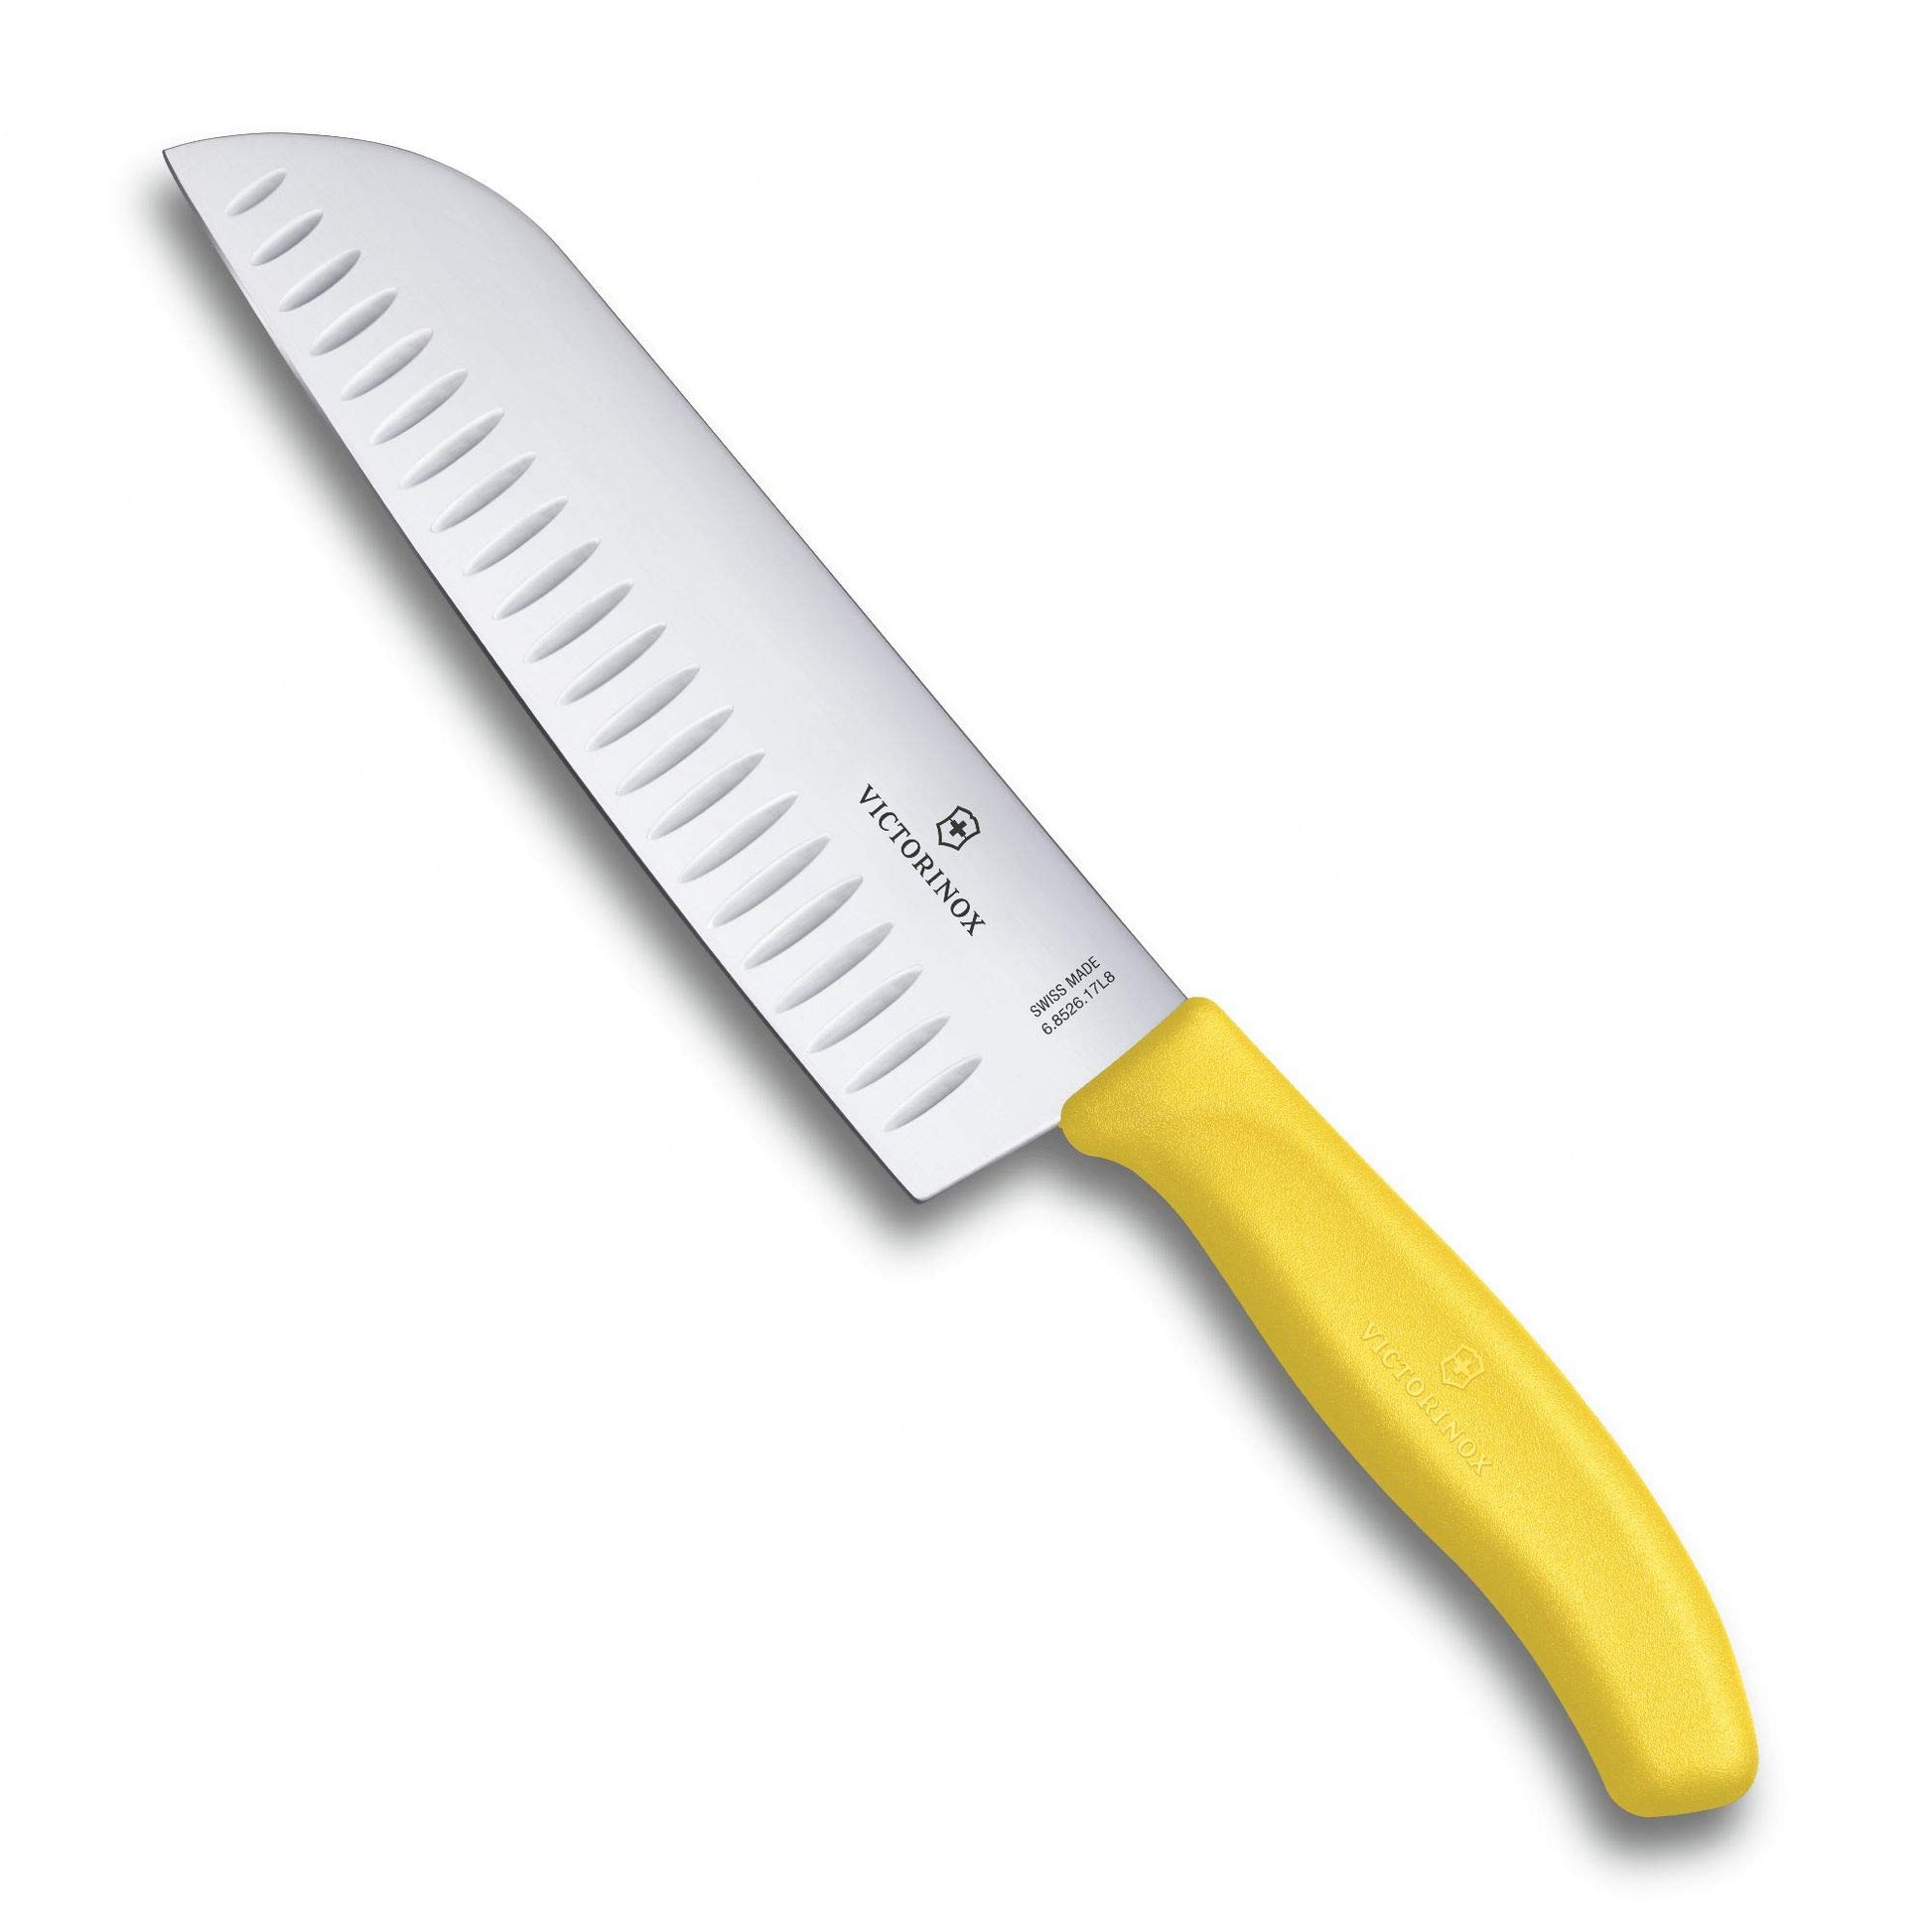 Cuchillos Victorinox: Calidad y Durabilidad para tu Cocina – Weber Coapa